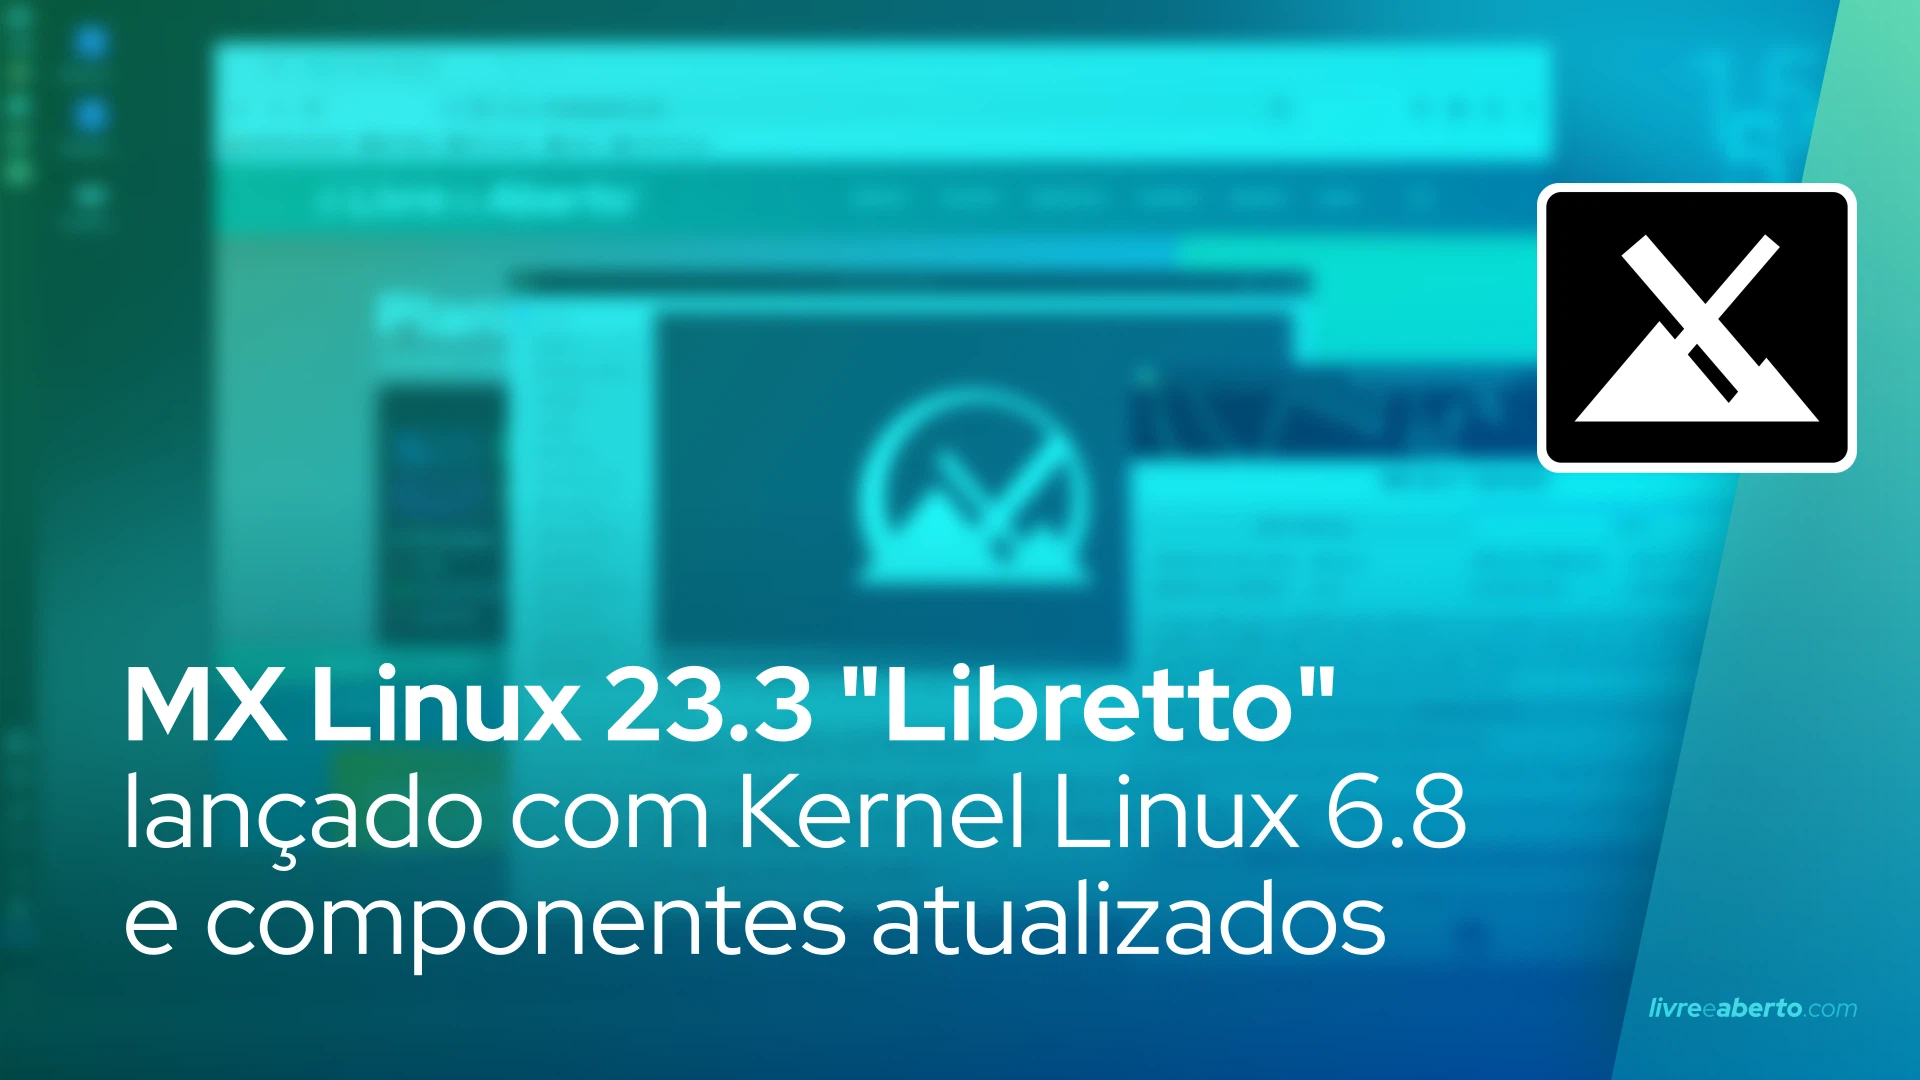 MX Linux 23.3 